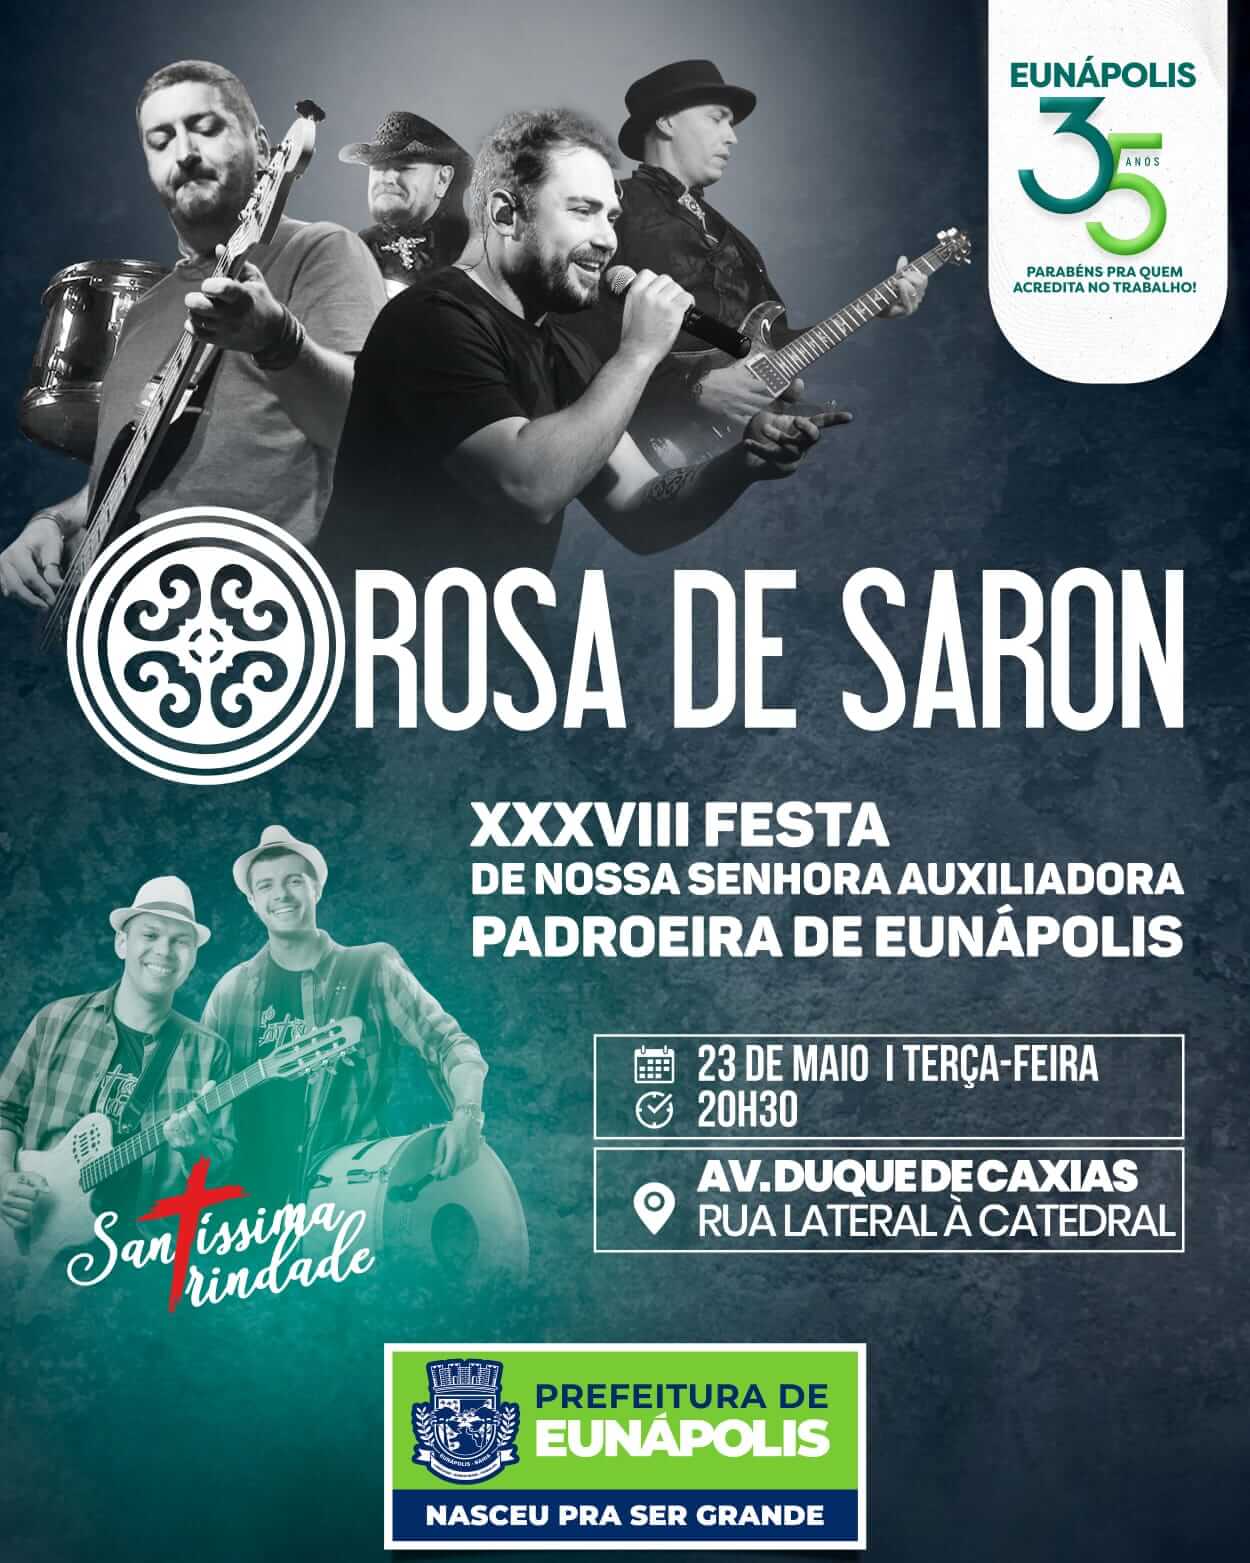 Prefeitura de Eunápolis promove show de Rosa de Saron na Festa da Padroeira nesta terça-feira 5